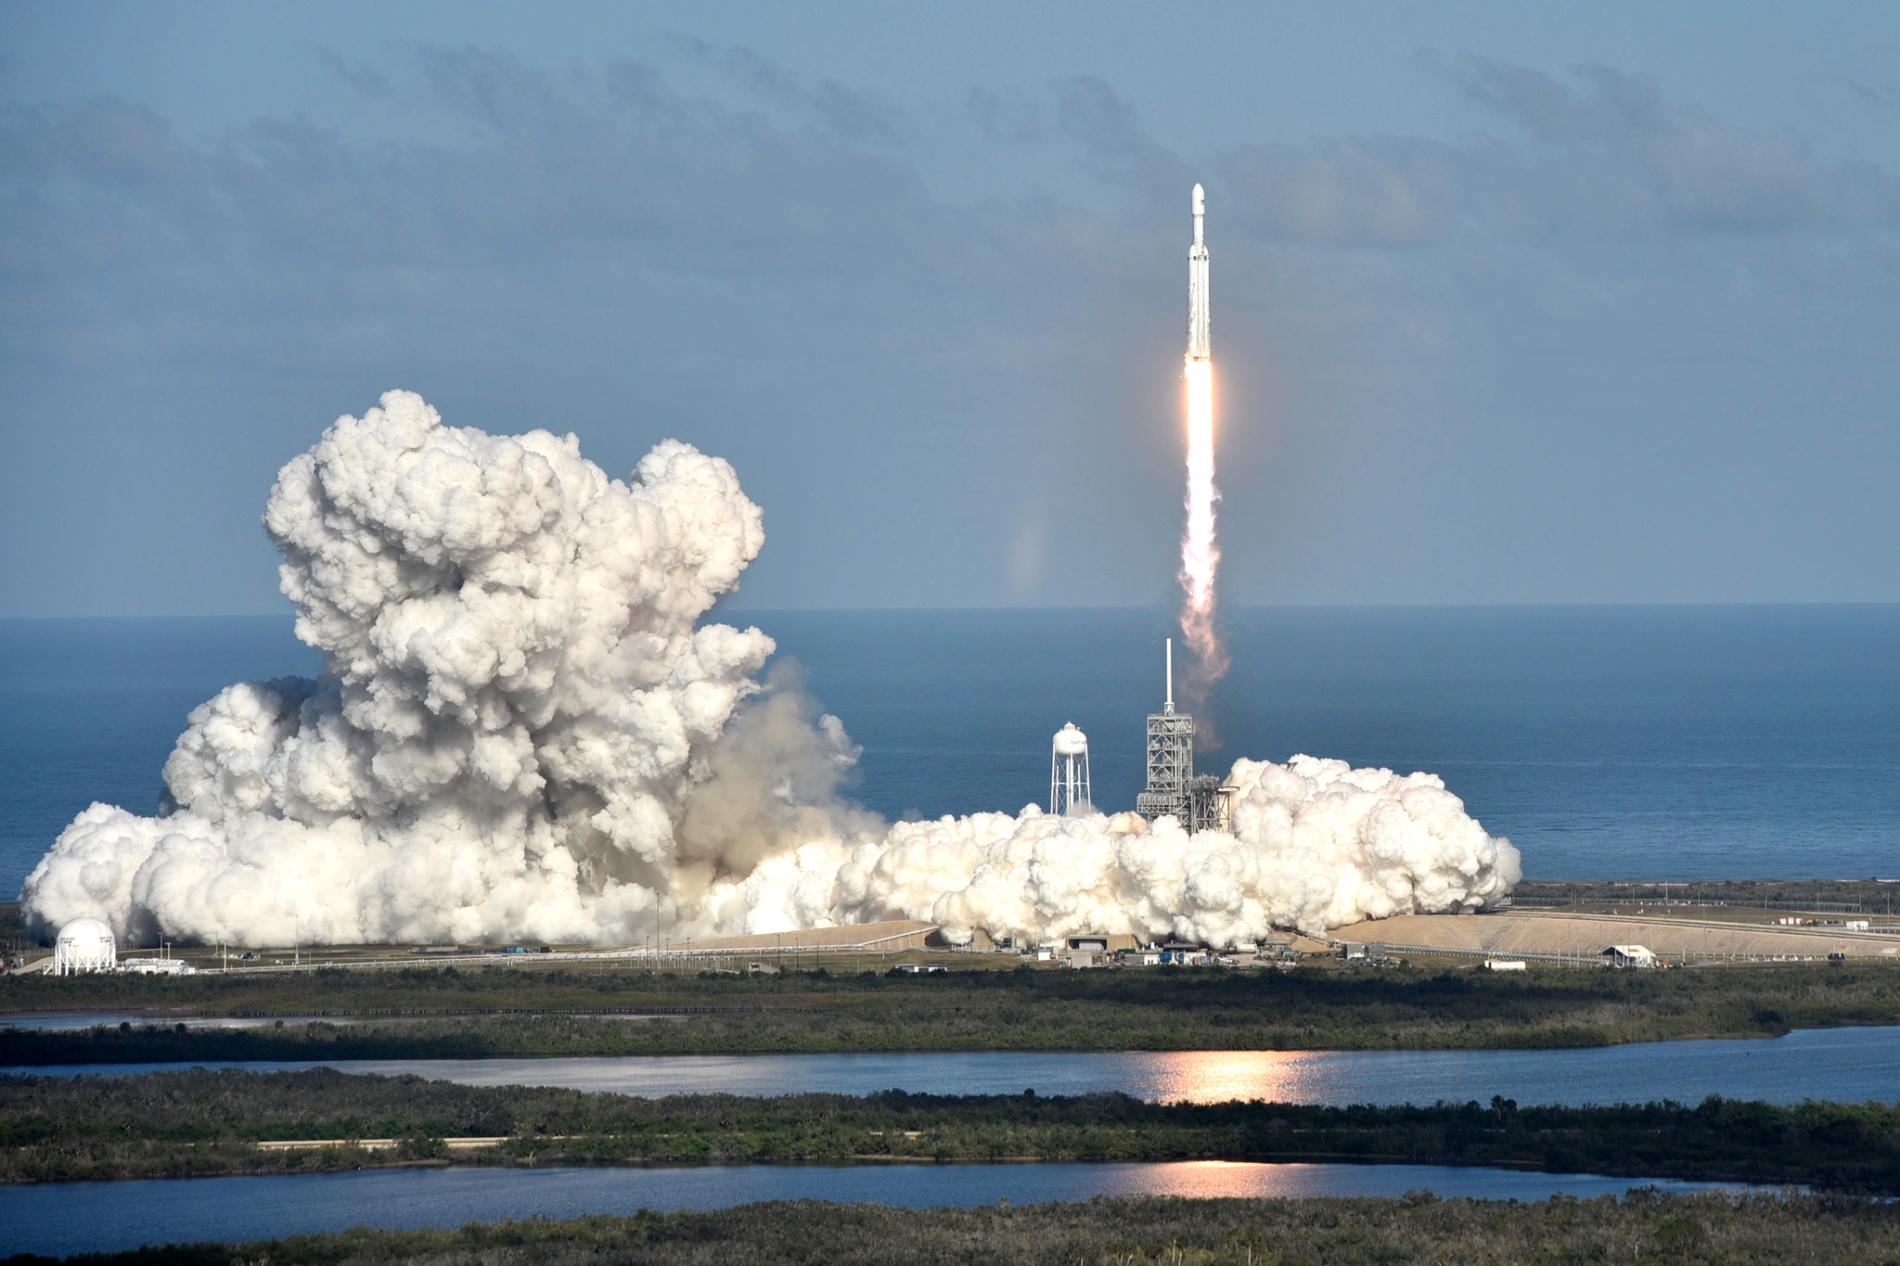 Förutom den elektriska fordon, Falcon Heavy raket som skickas upp i rymden en hemlig last